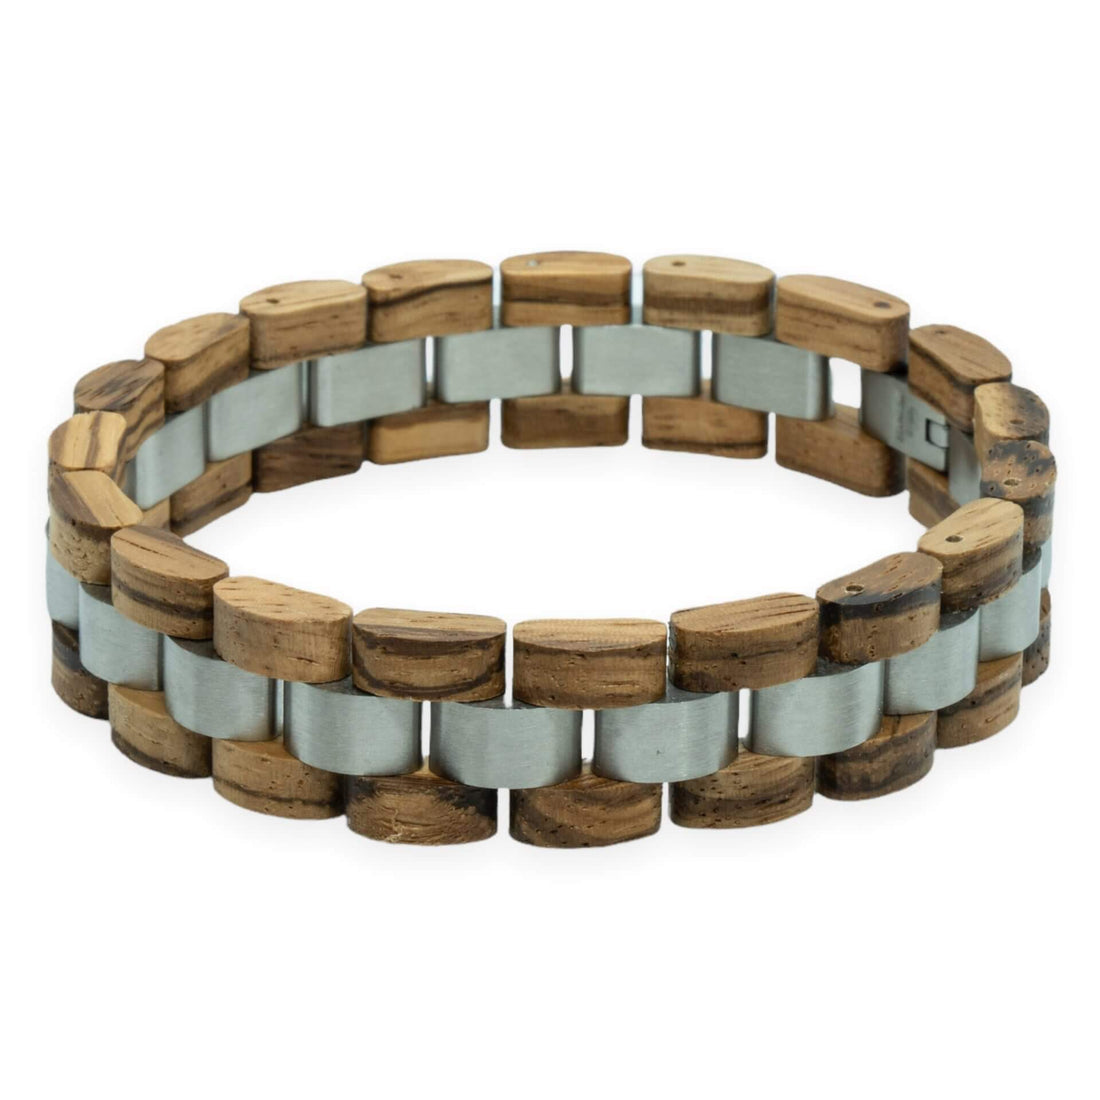 Monte Rosa (Zebrano + stainless steel) - Wooden bracelet